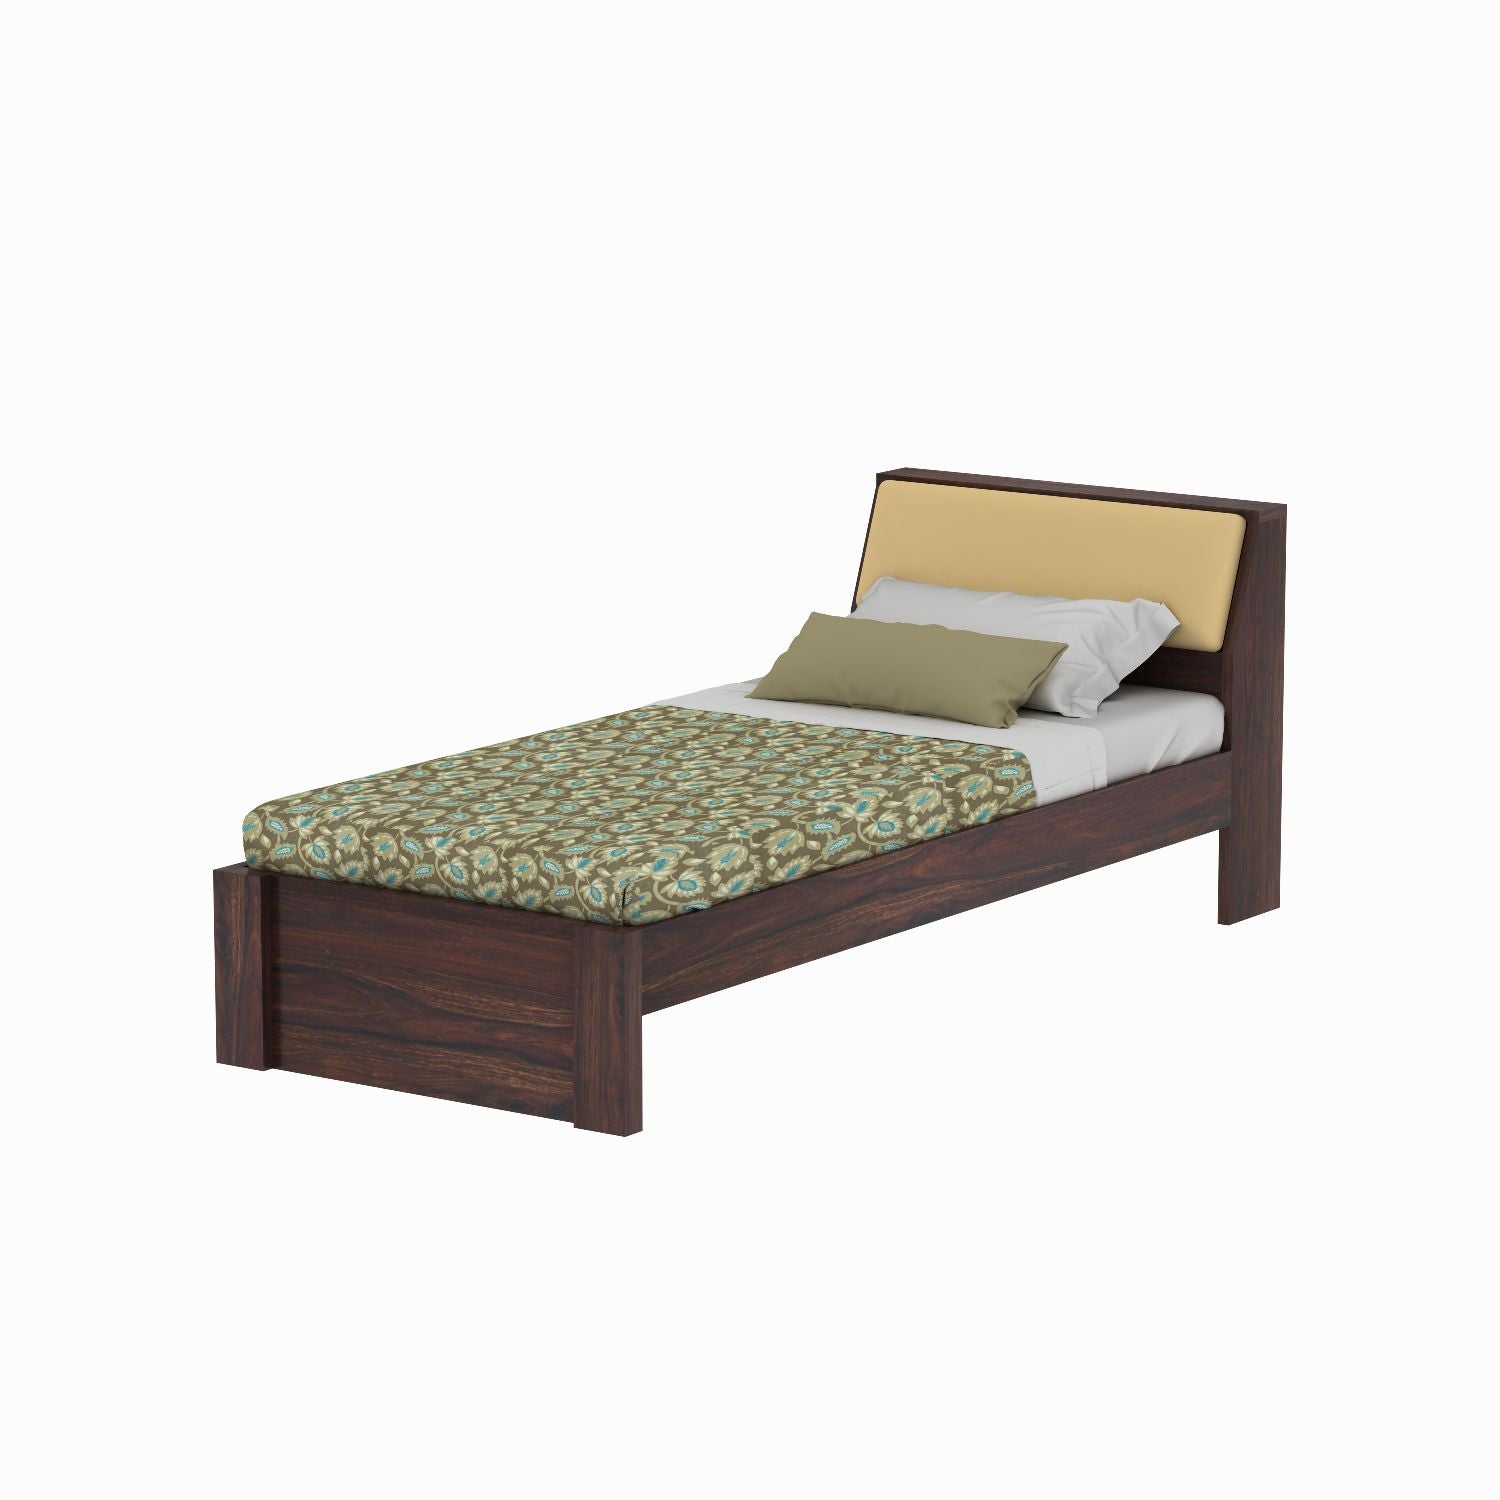 Rubikk Solid Sheesham Wood Single Bed Without Storage (Walnut Finish)